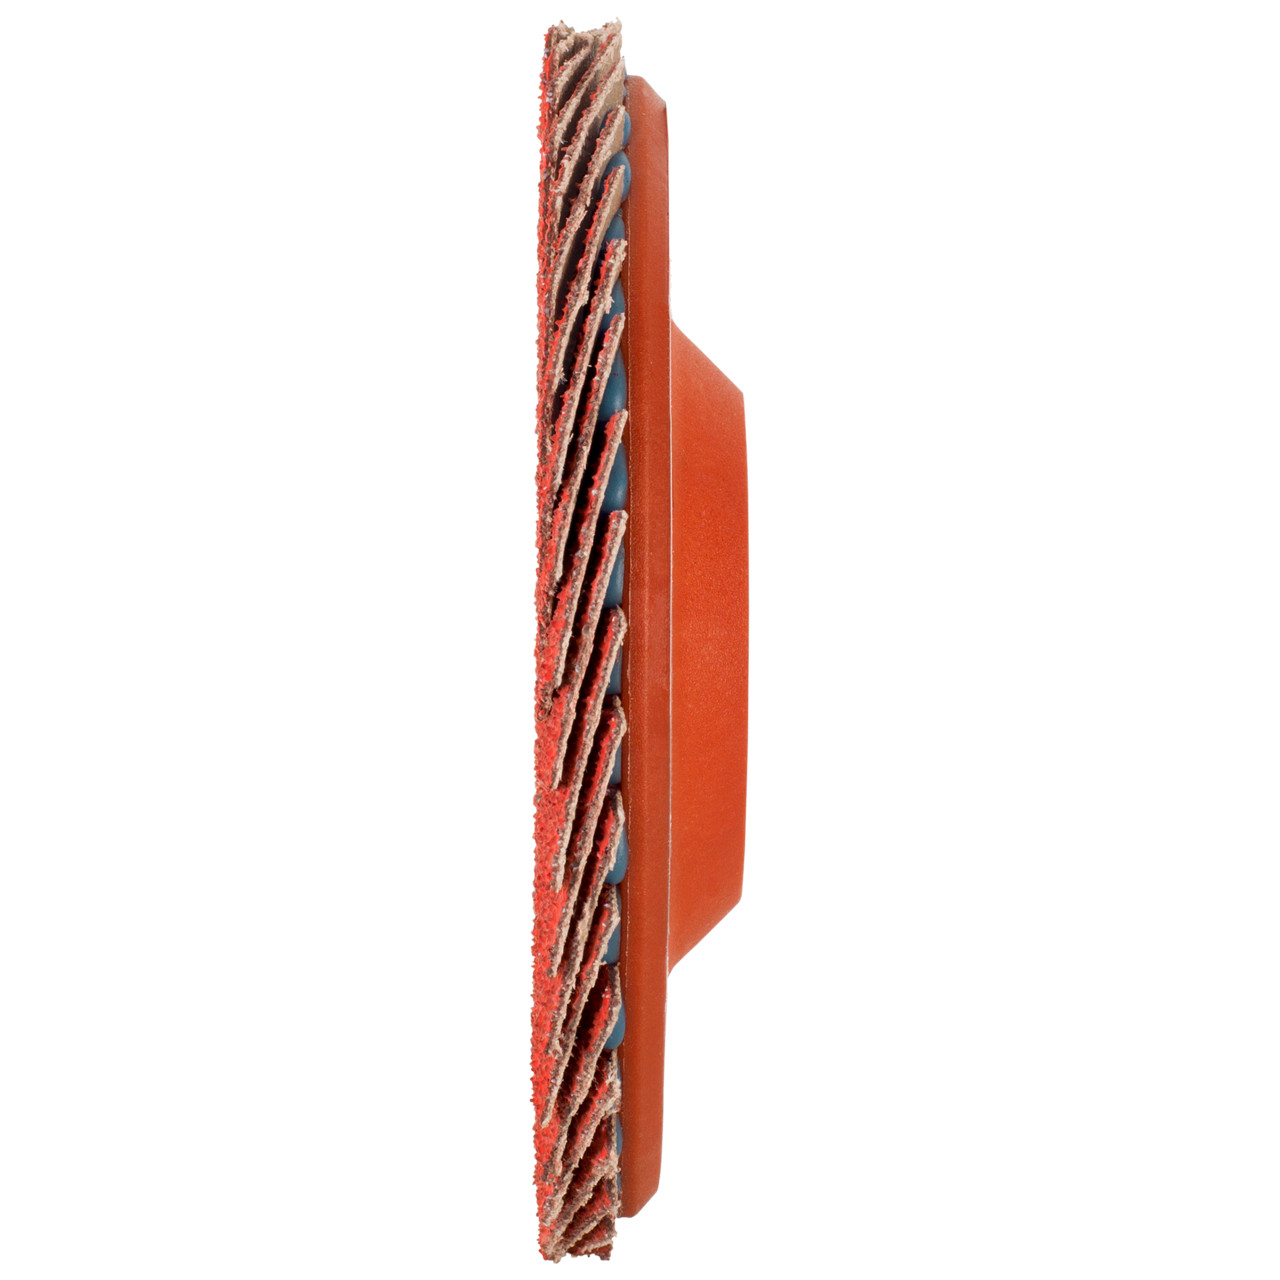 Tyrolit Getande borgring DxH 125x22,23 CERAMIC voor roestvrij staal, P60, vorm: 28N - rechte uitvoering (kunststof draaglichaam), Art. 719847